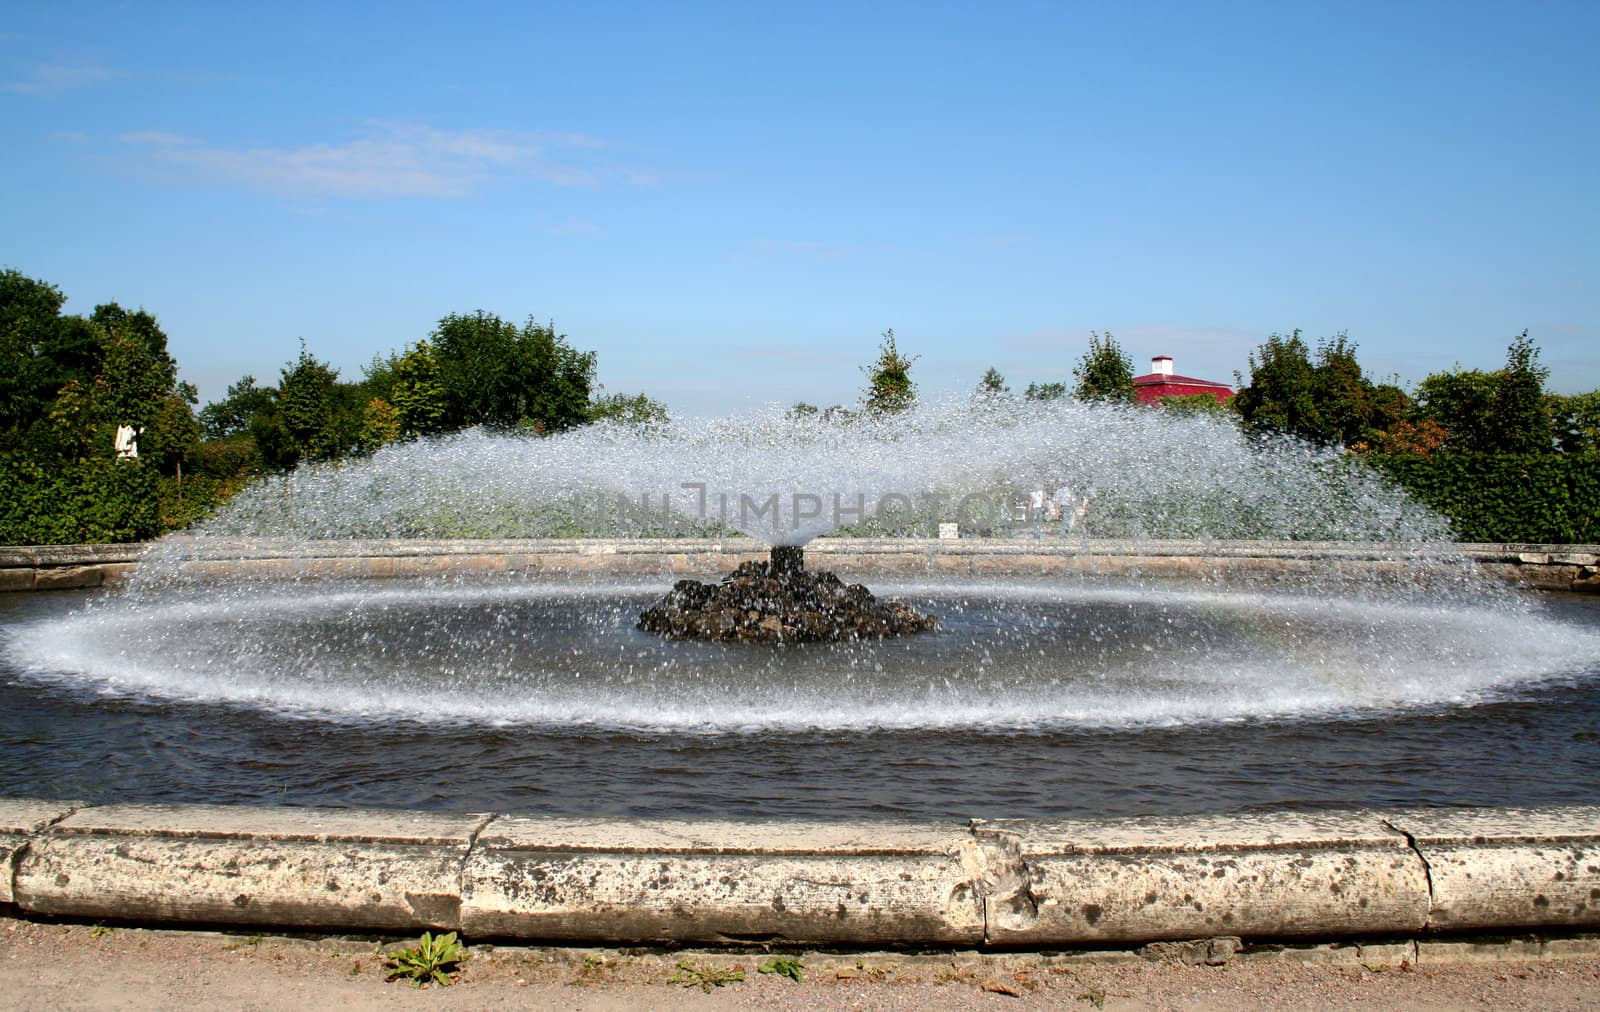 fountain in the garden by foaloce